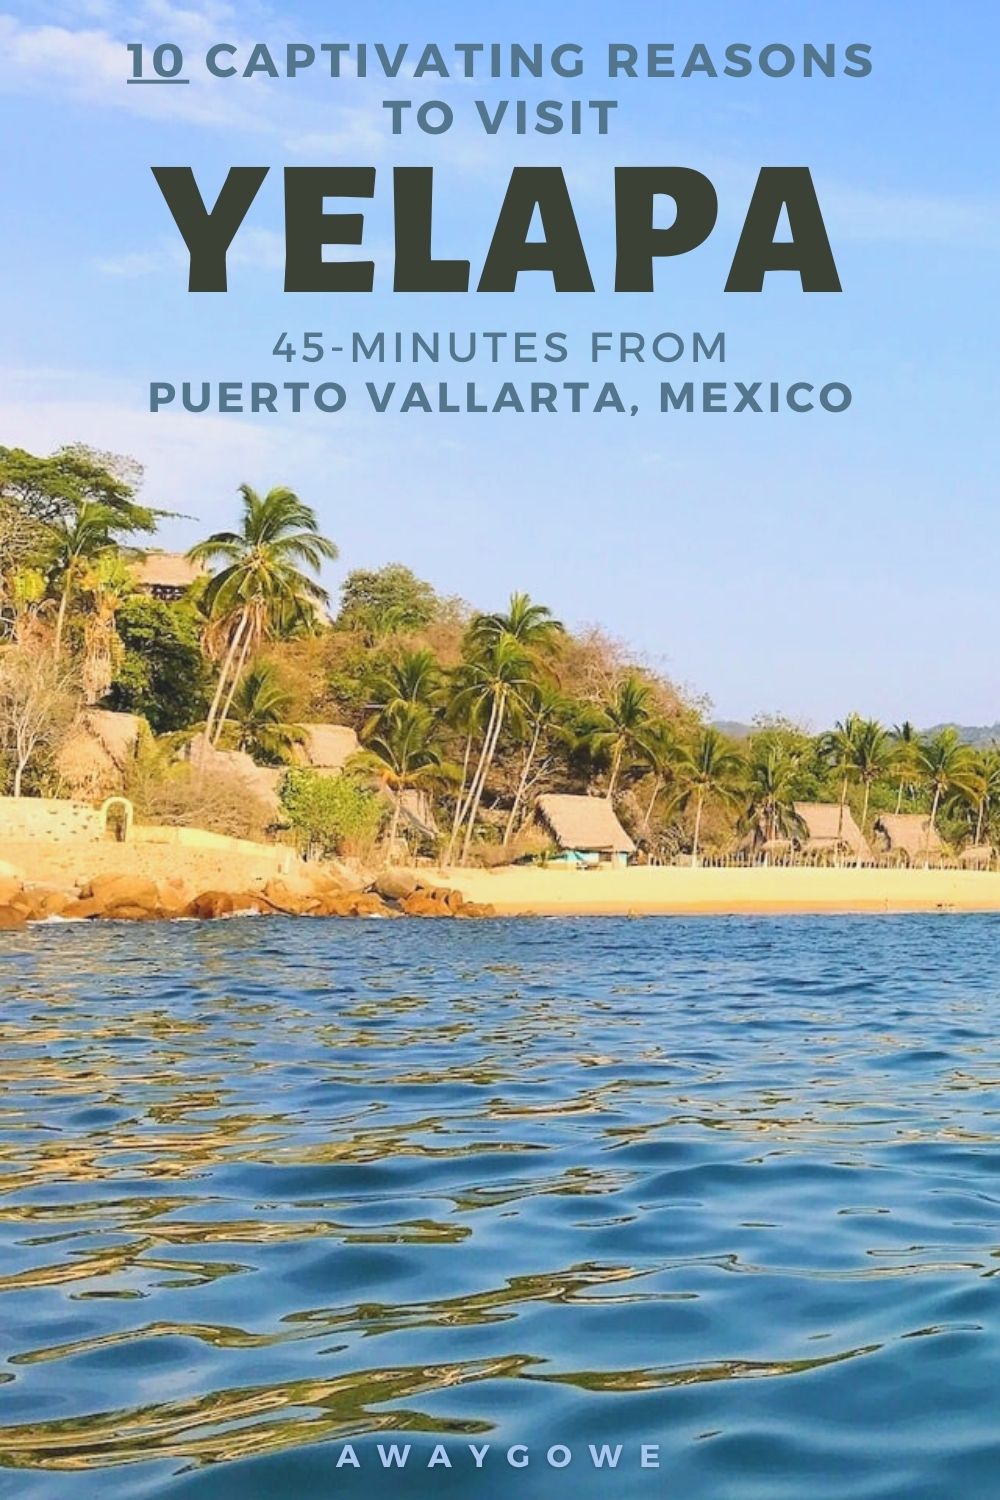 reasons to visit Yelapa Mexico